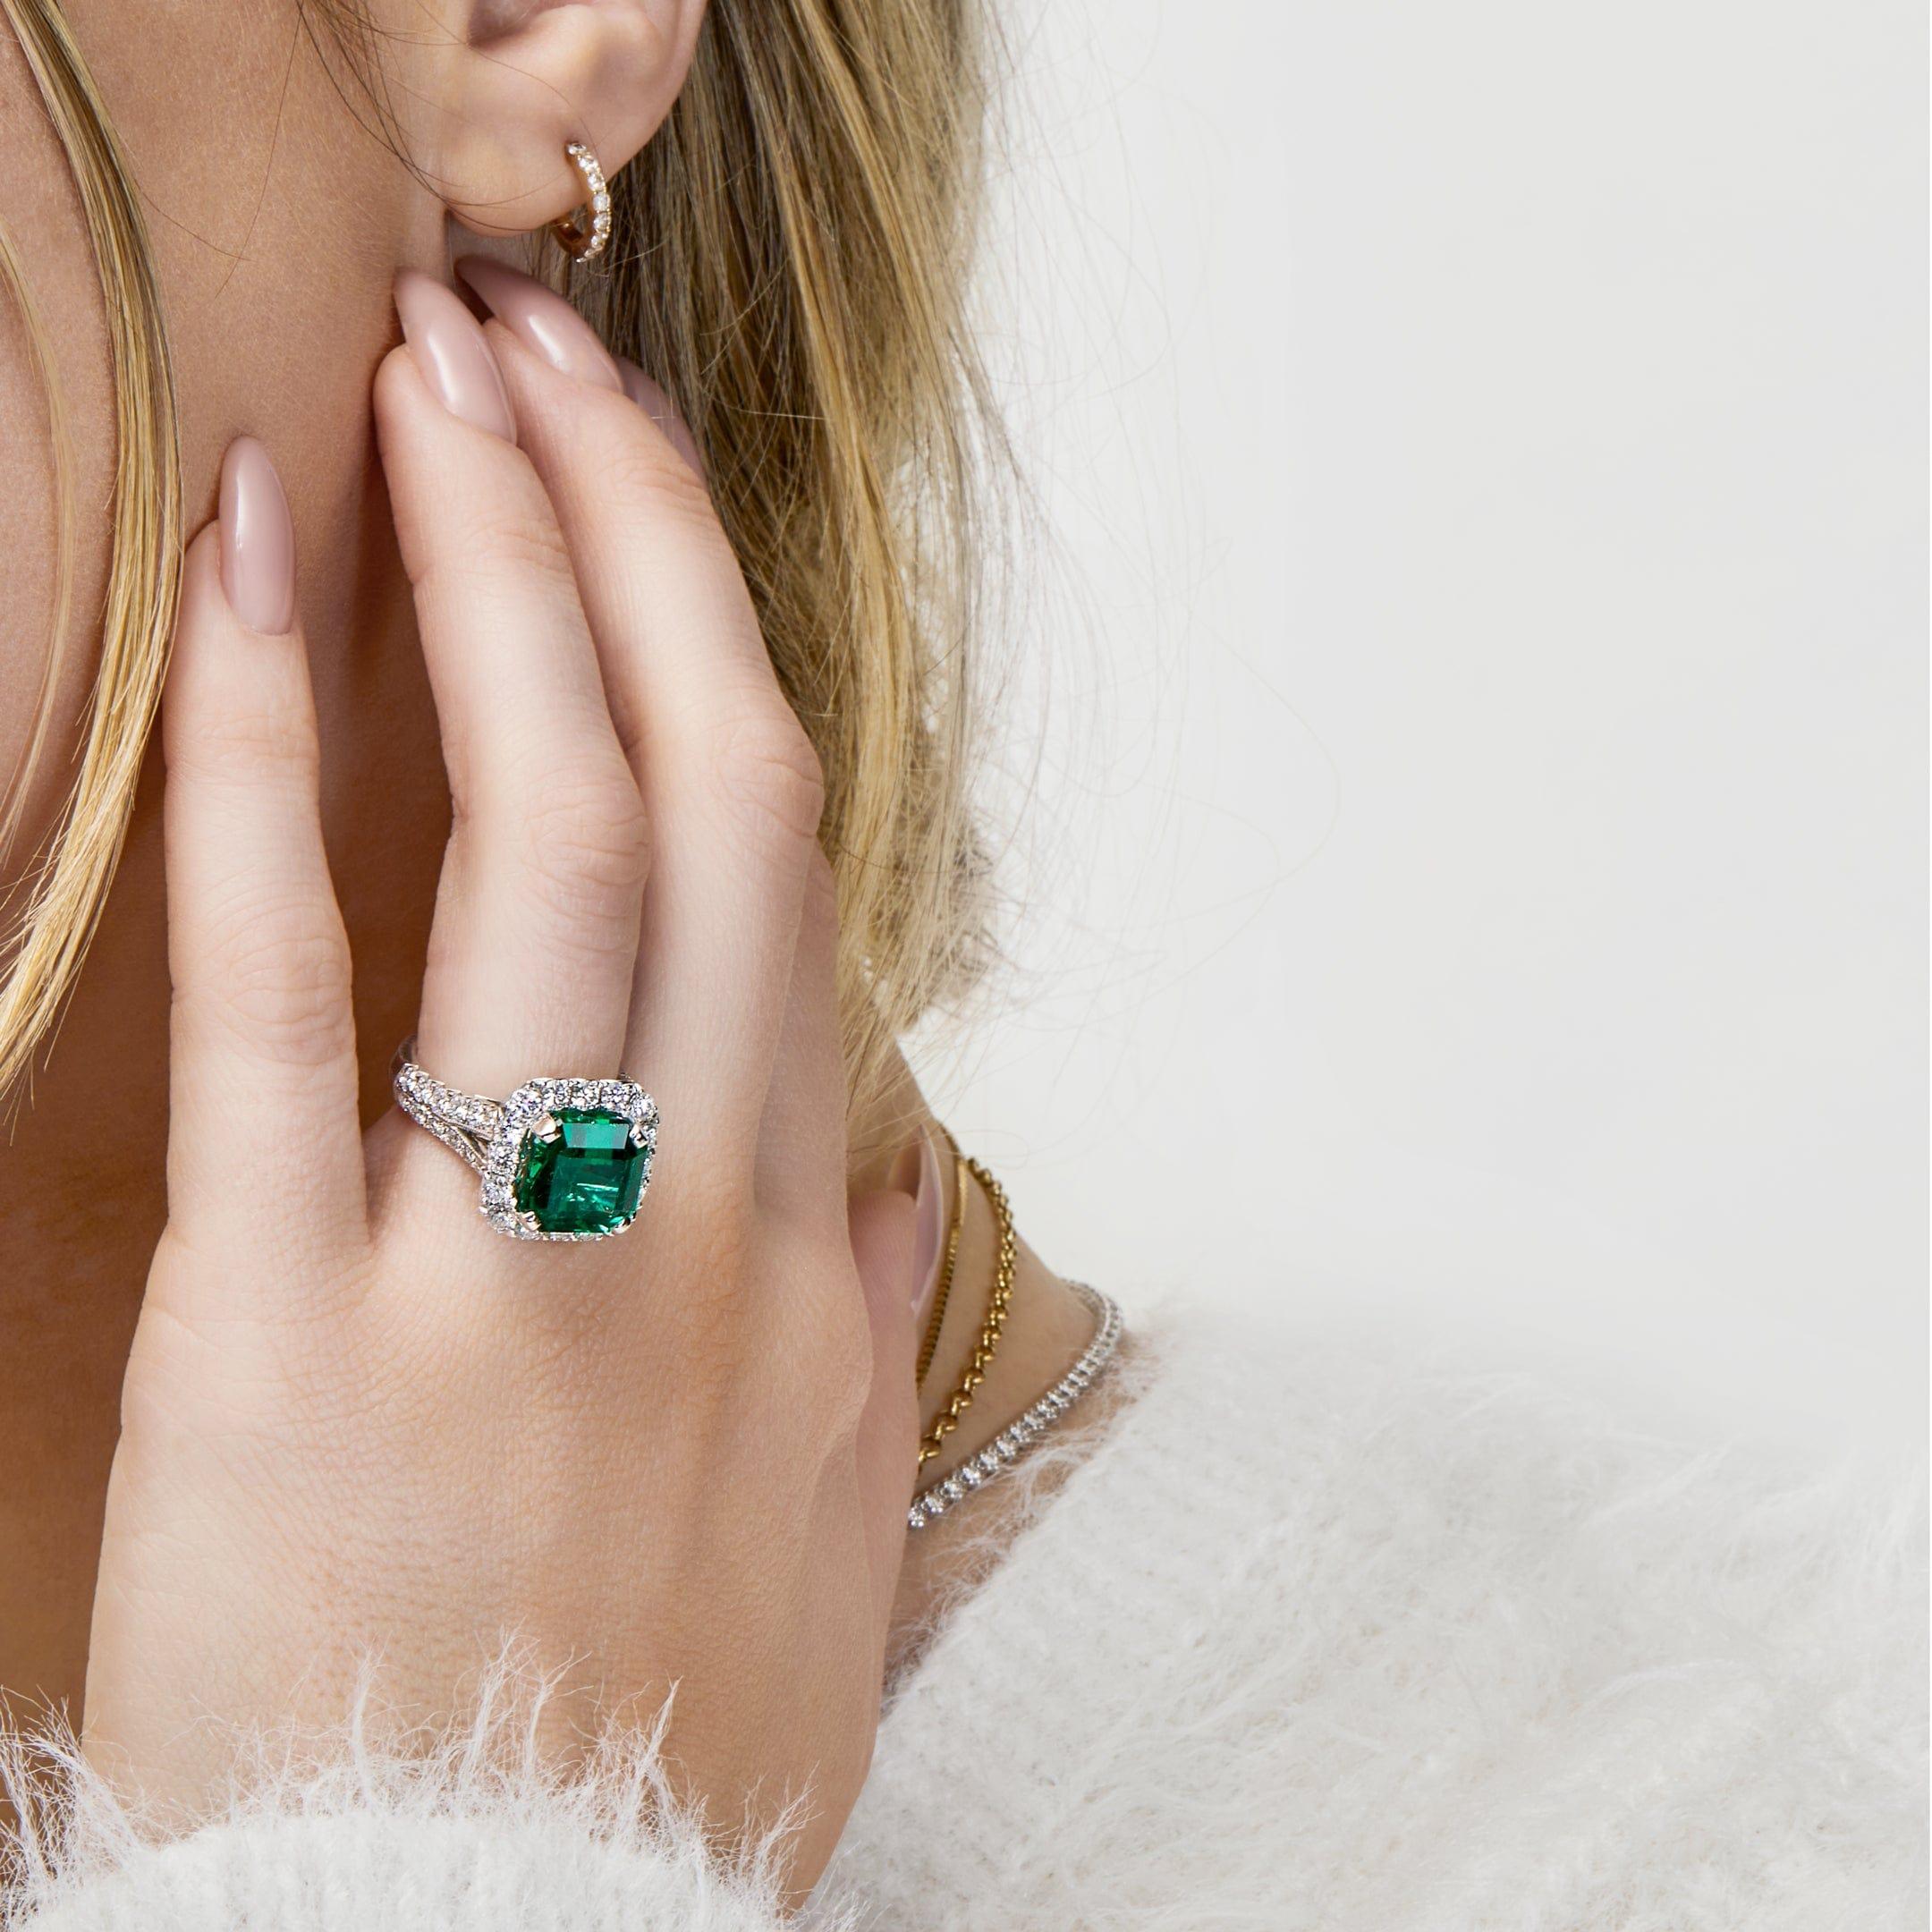 Werfen Sie einen Blick auf diesen sambischen Smaragdring mit einem 5,84 ct. lebhaft grünen Smaragd, der in einem achteckigen Stufenschliff geschliffen und mit 1,65 ct. Diamanten besetzt ist. Auf einem 18-karätigen Weißgoldband gefasst, kontrastiert